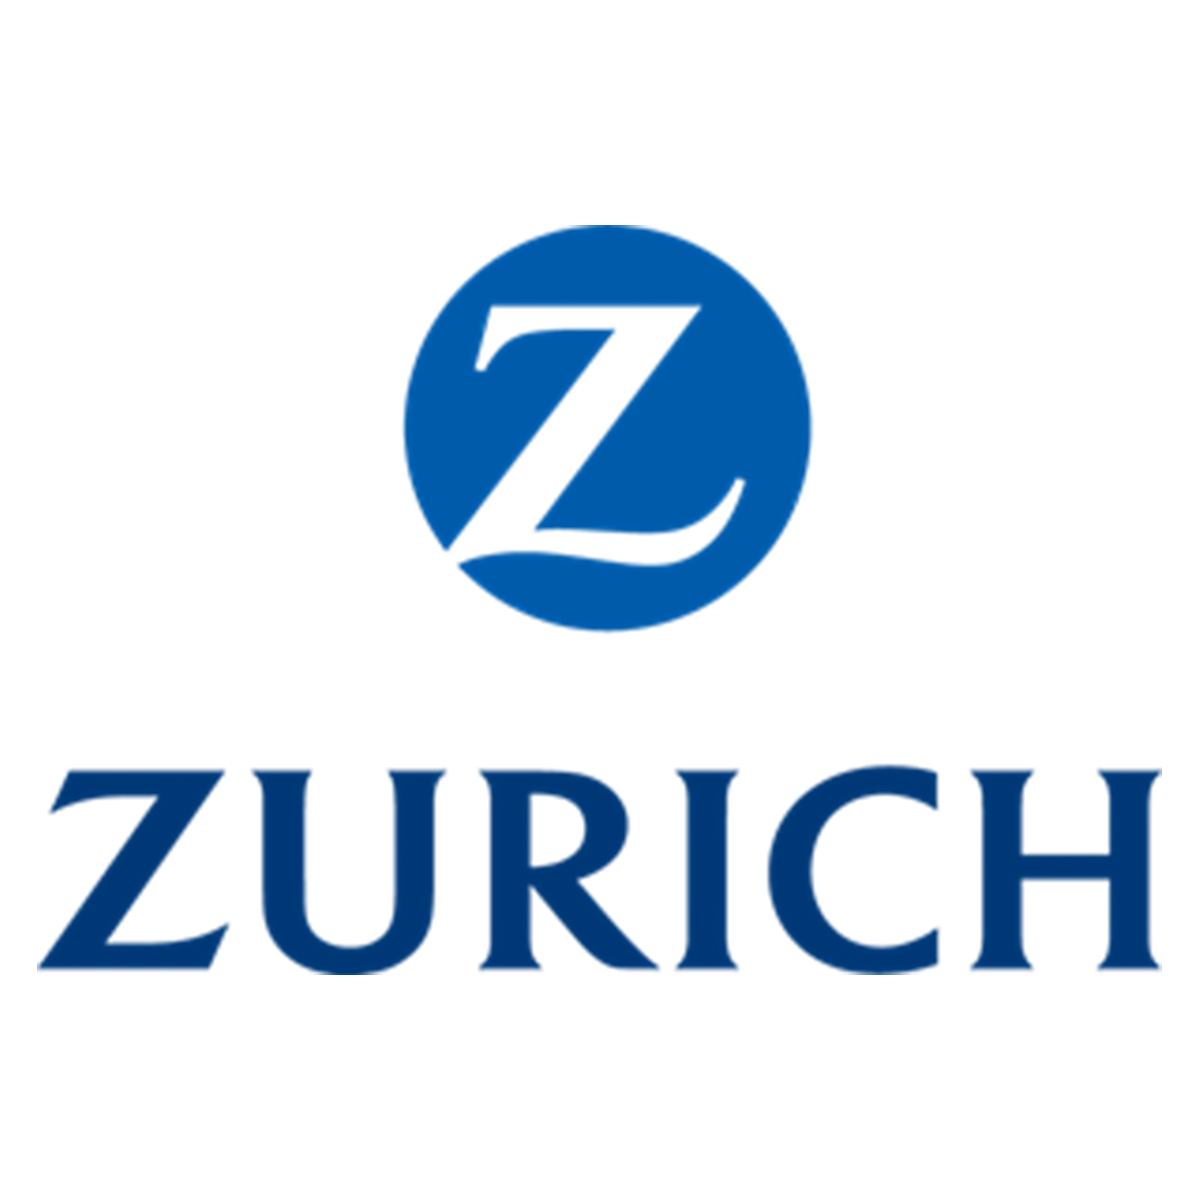 A-Zurich.jpg